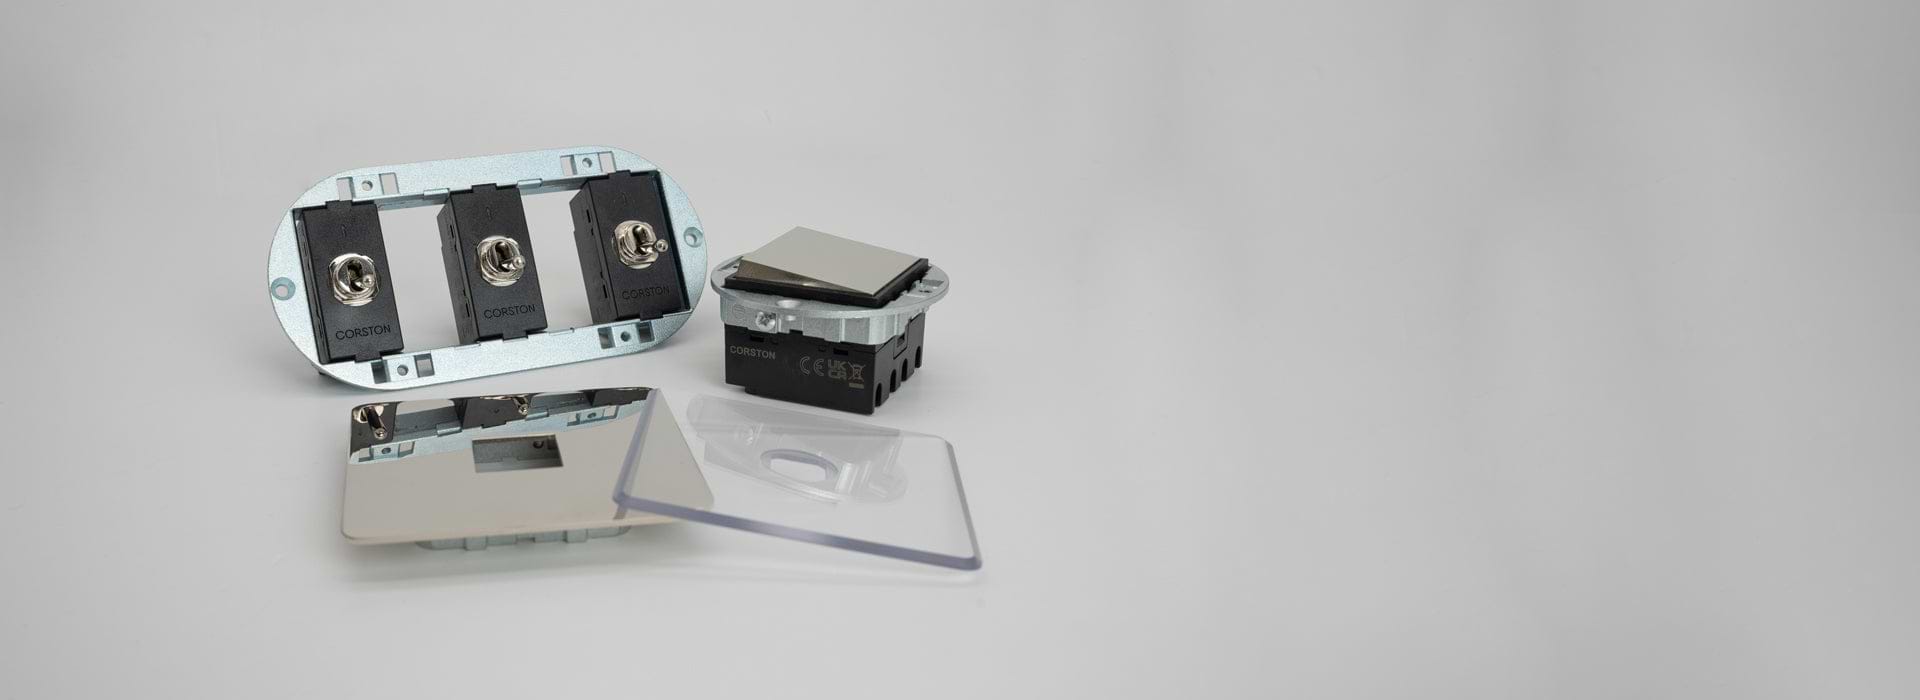 Einsatz mit drei Kipphebelschaltern, eine Wippe und eine Grundplatte aus Nickel sowie eine durchsichtige Grundplatte auf grauem Hintergrund